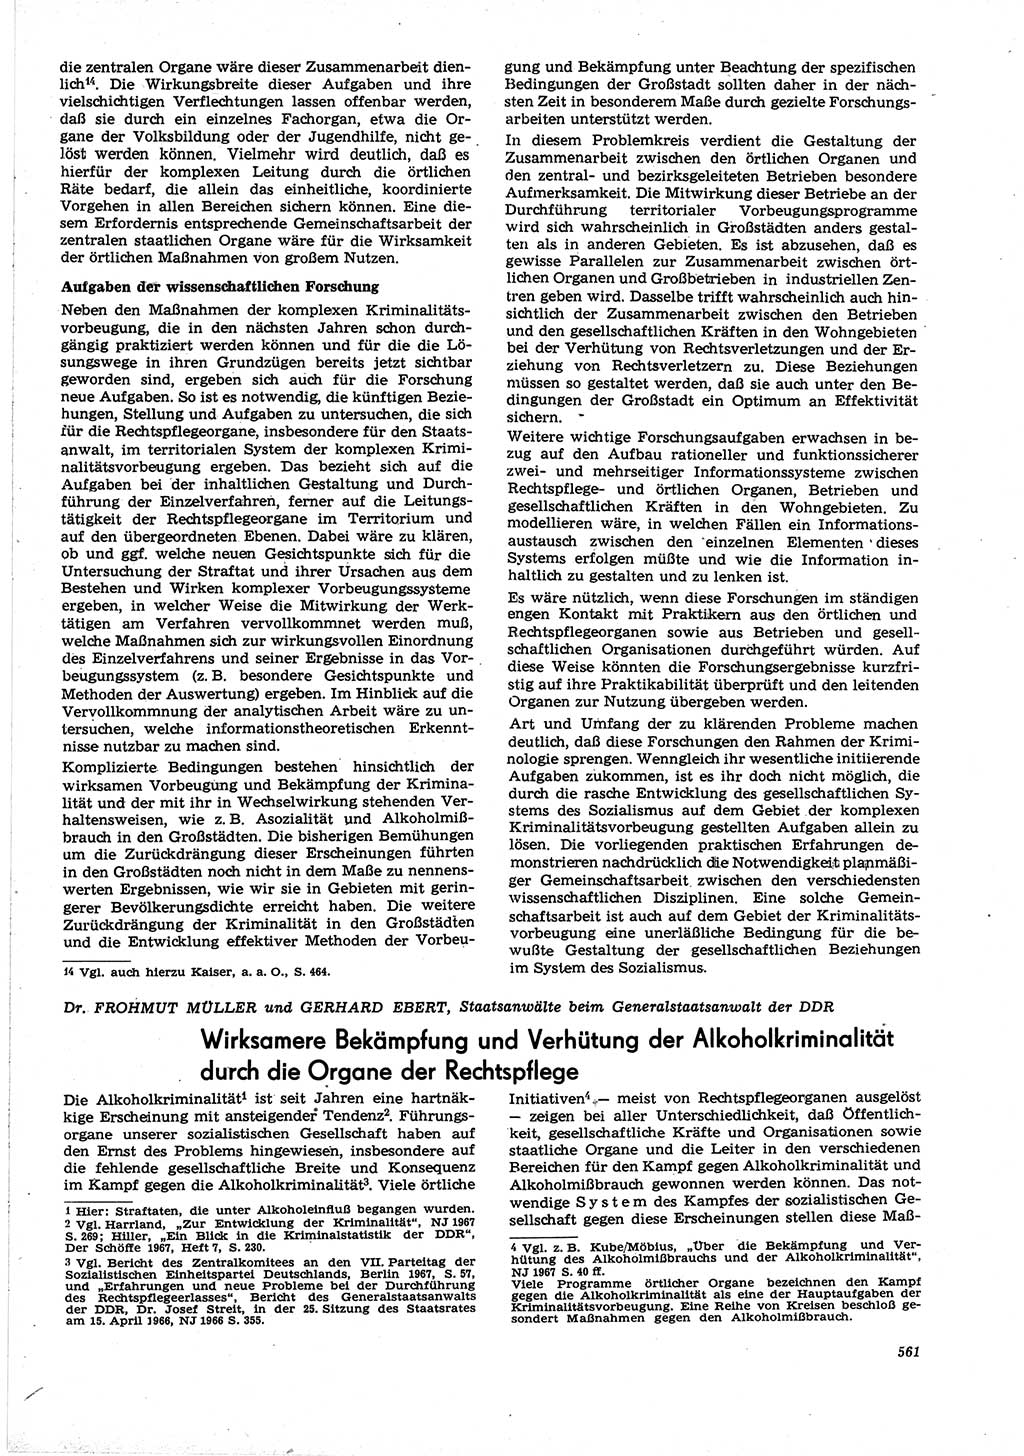 Neue Justiz (NJ), Zeitschrift für Recht und Rechtswissenschaft [Deutsche Demokratische Republik (DDR)], 21. Jahrgang 1967, Seite 561 (NJ DDR 1967, S. 561)